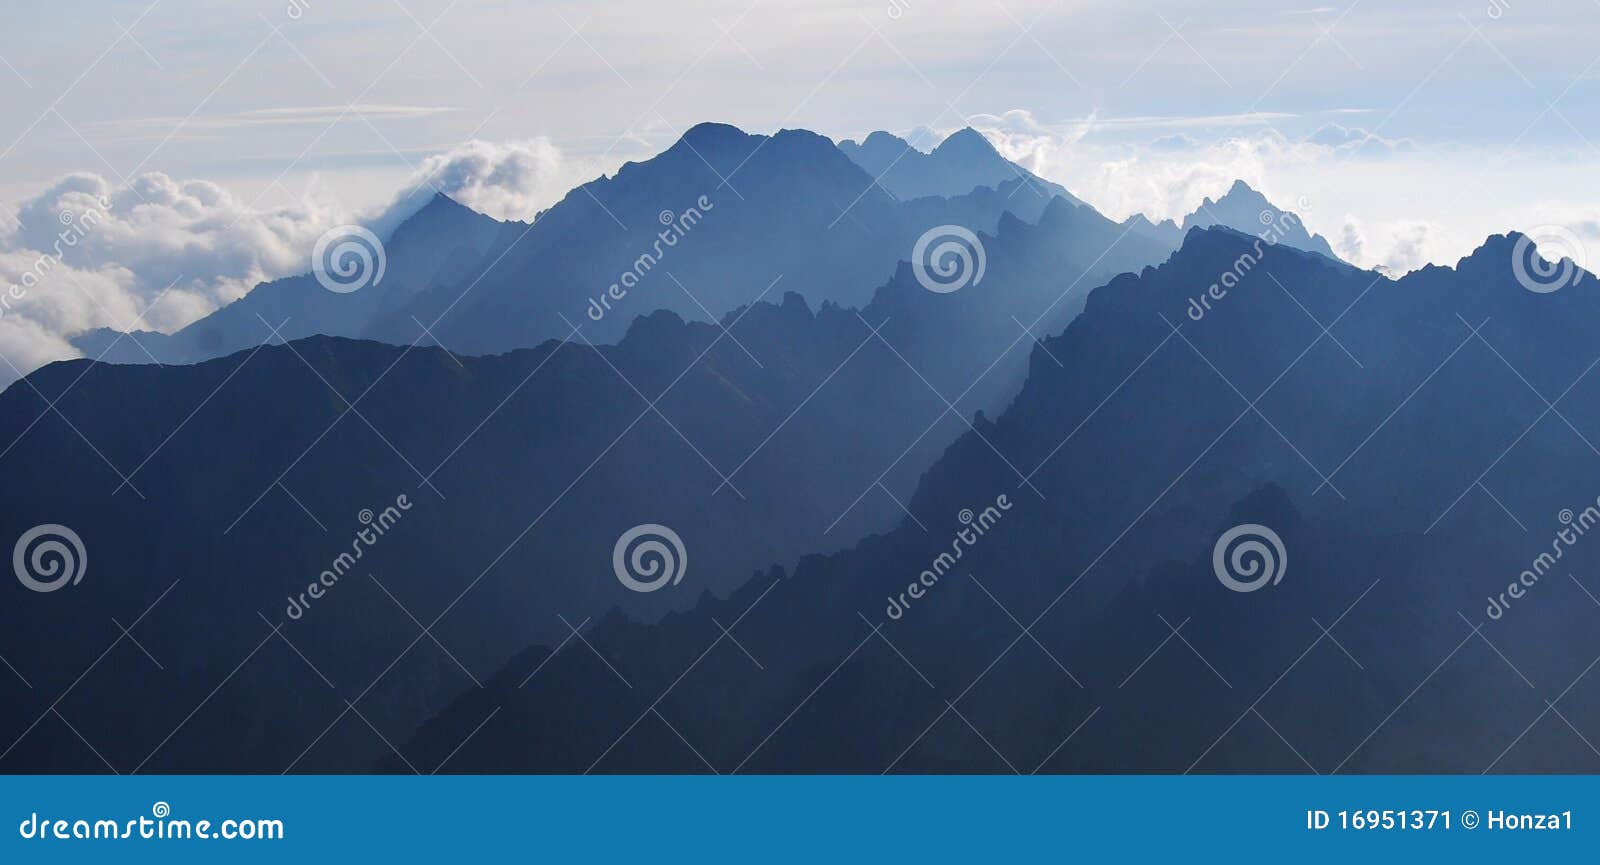 the tatra mountains